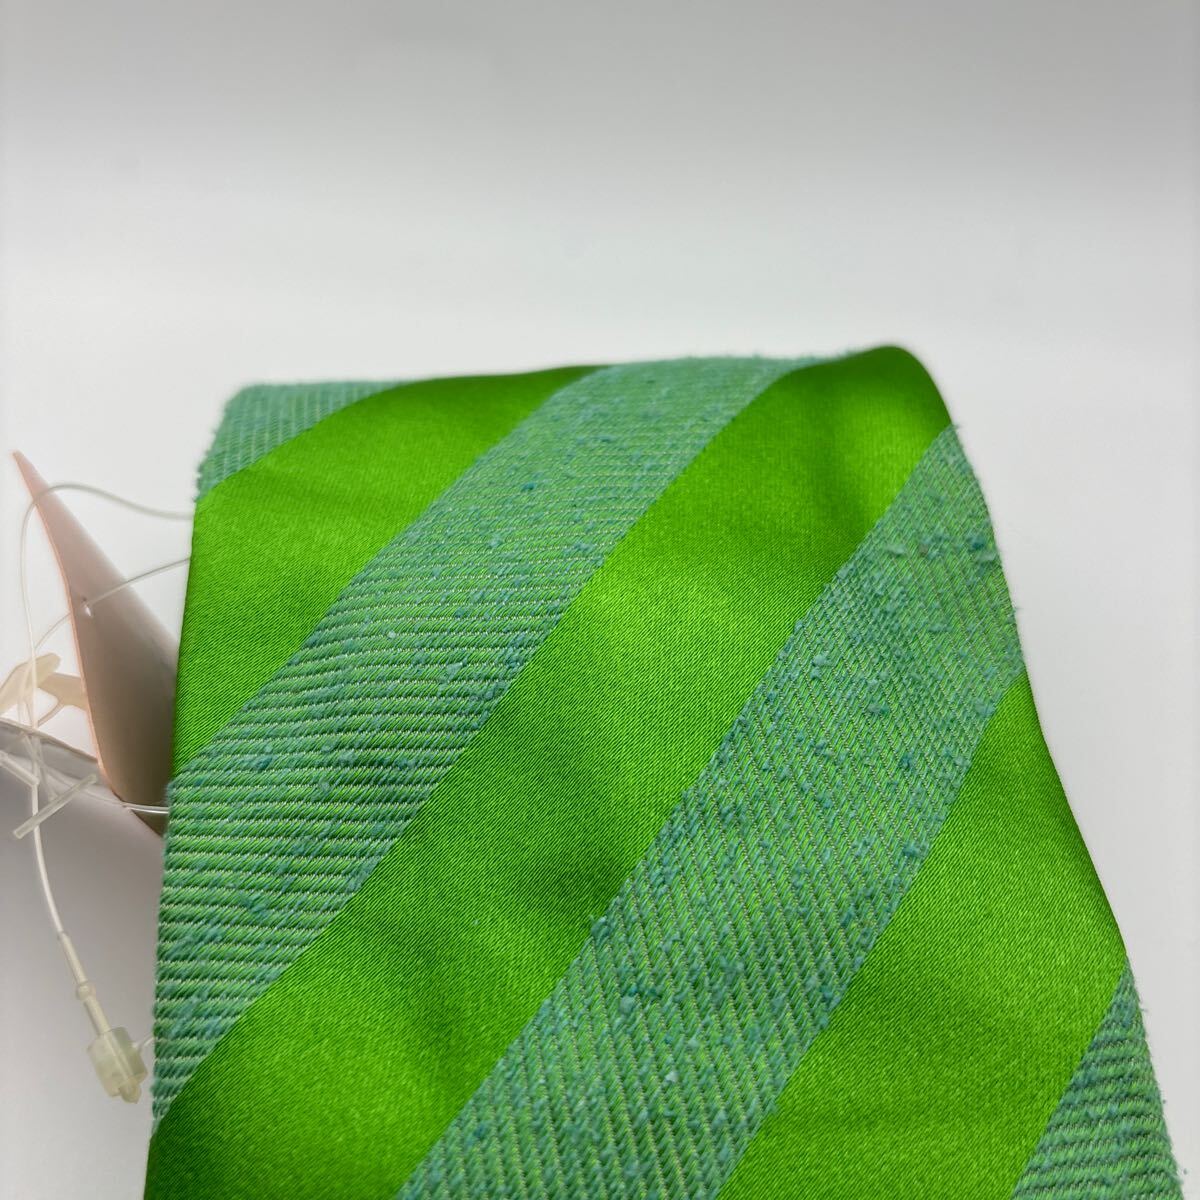  не использовался ICEBERG Iceberg галстук шелк olizonti с биркой Италия производства ITALY наклонный полоса желтый зеленый 2 класса товар Vintage 